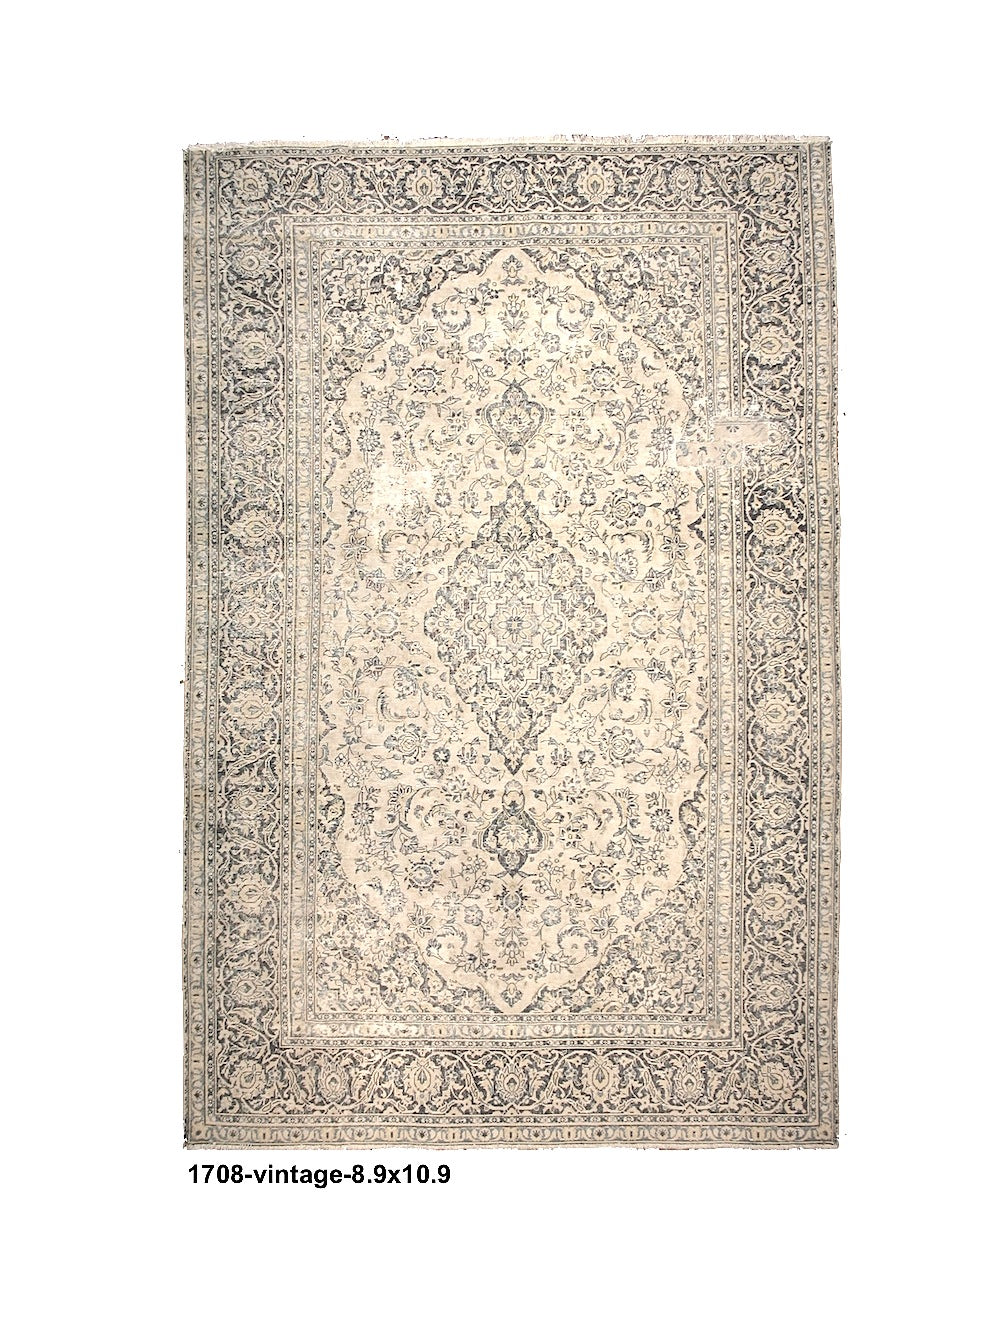 Vintage Distressed Persian Rug